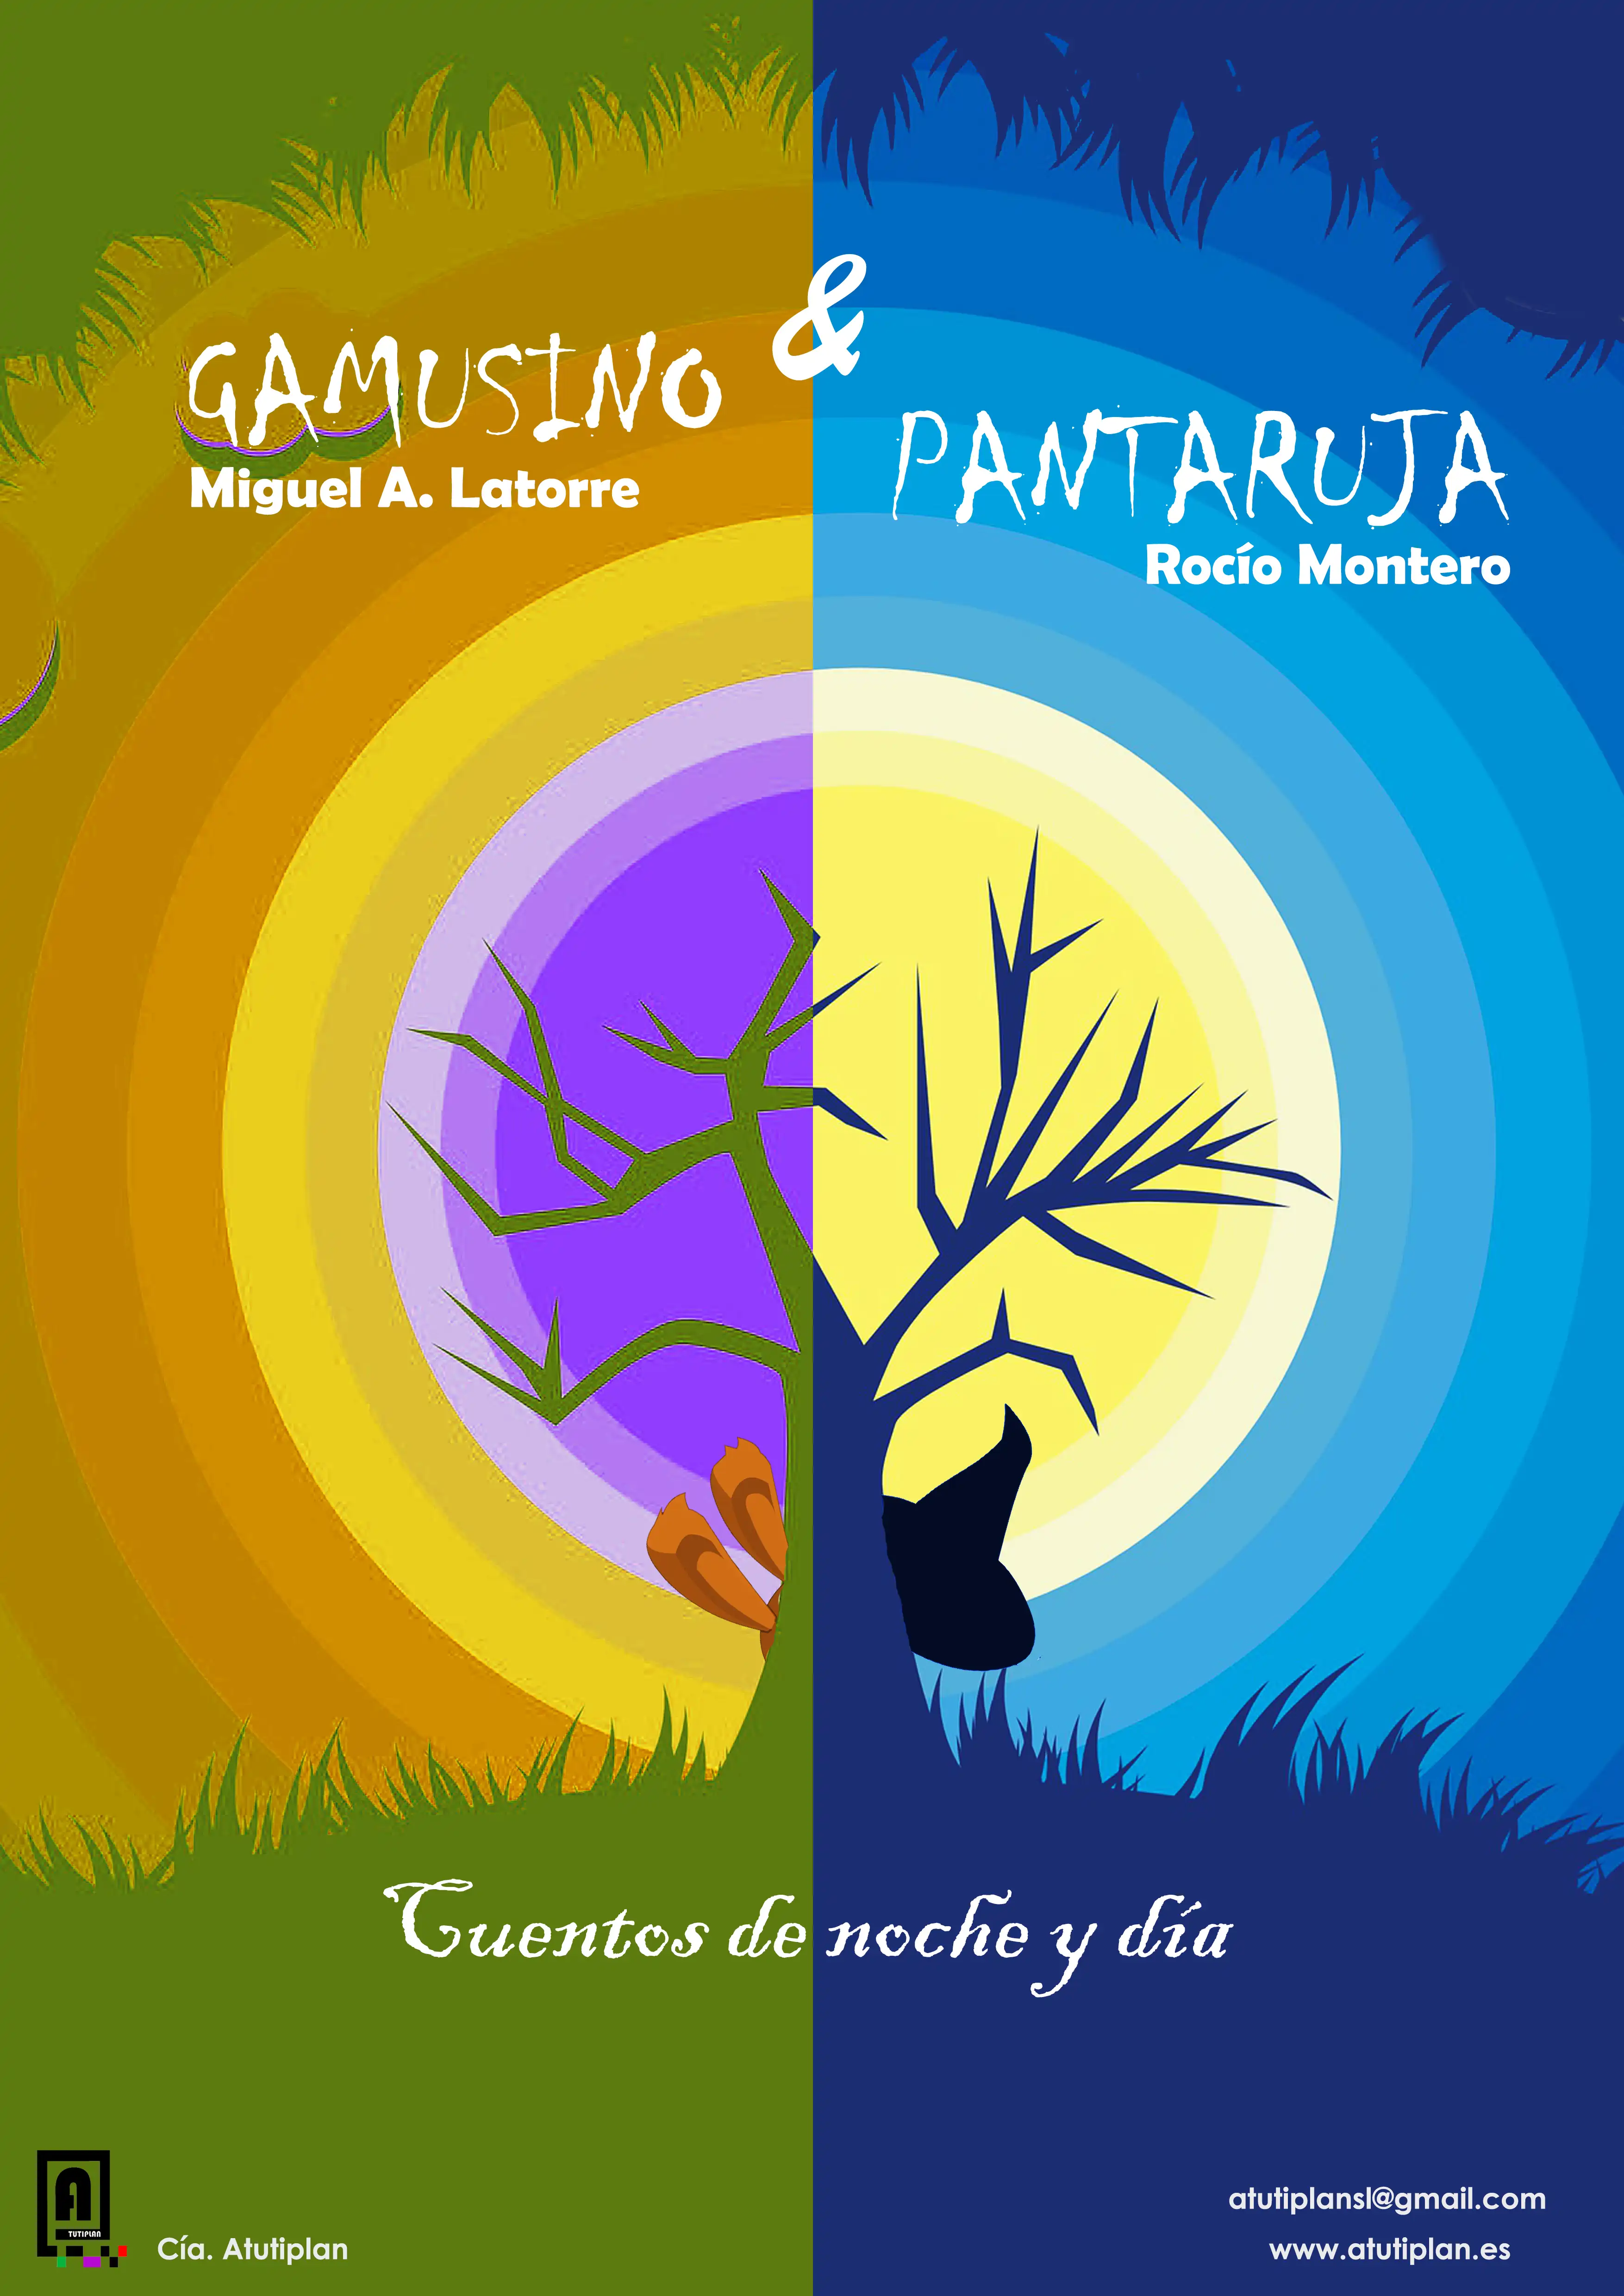 Gamusino y Pantaruja